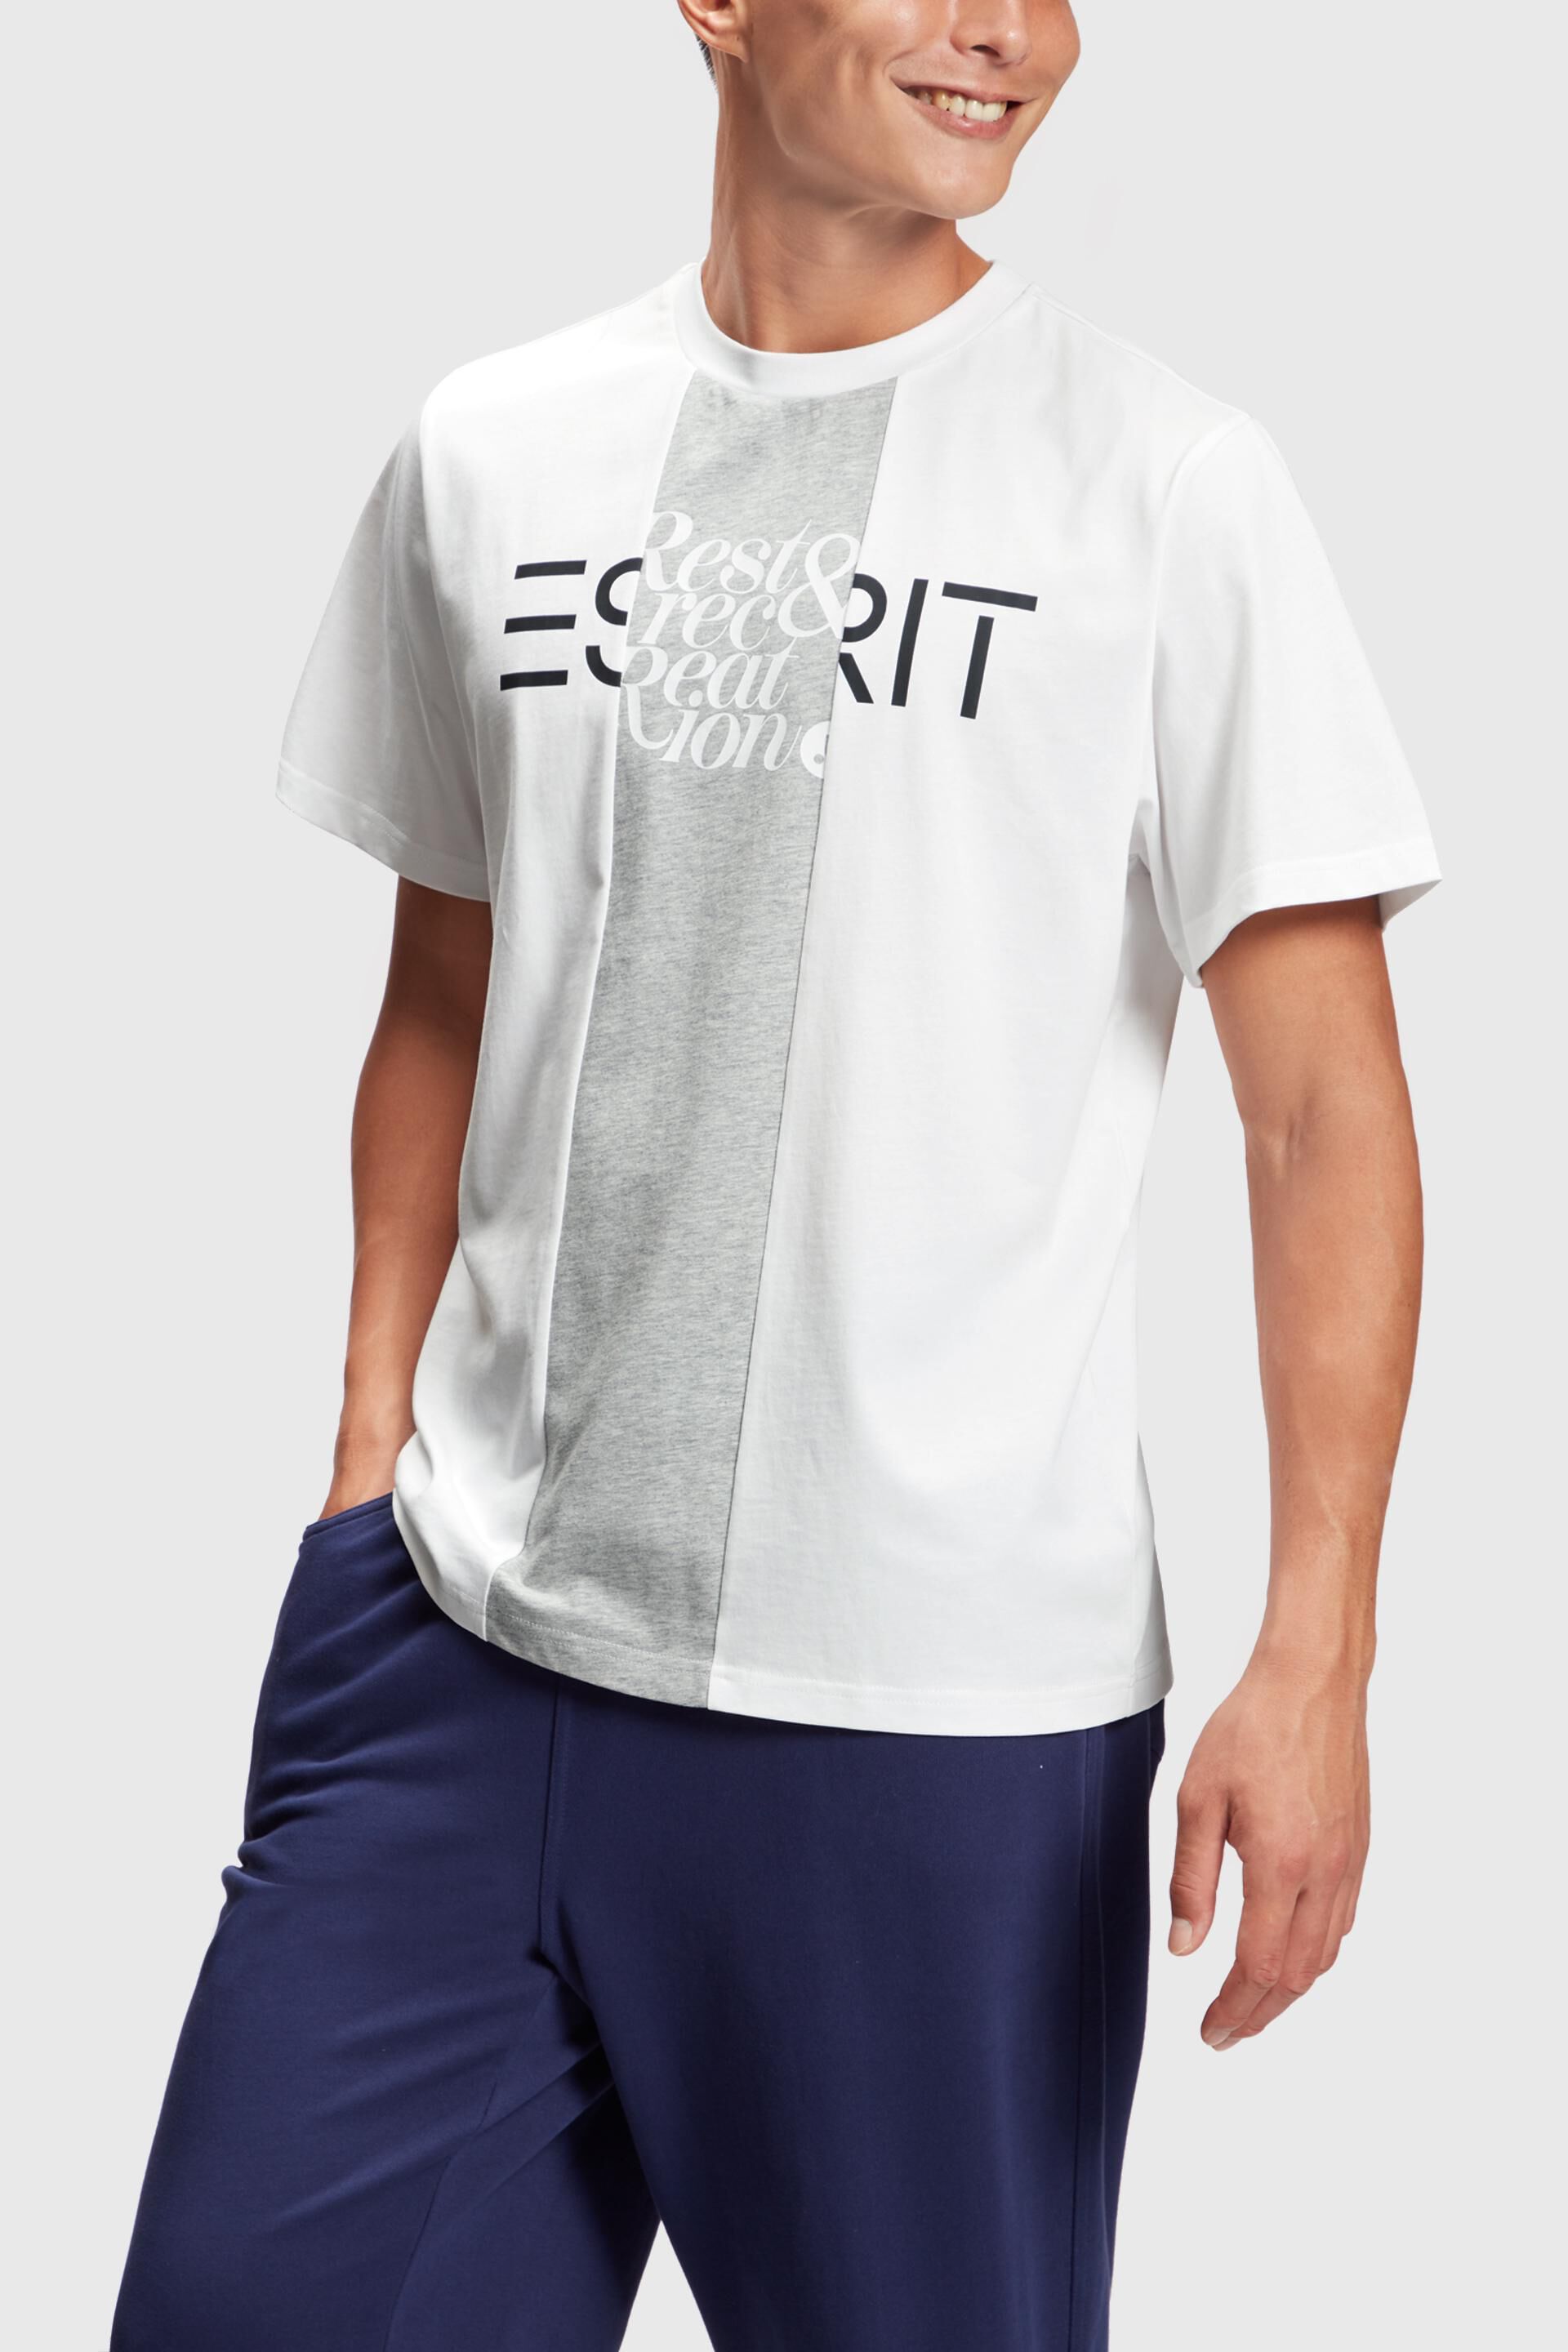 Esprit mit T-Shirt Flicken